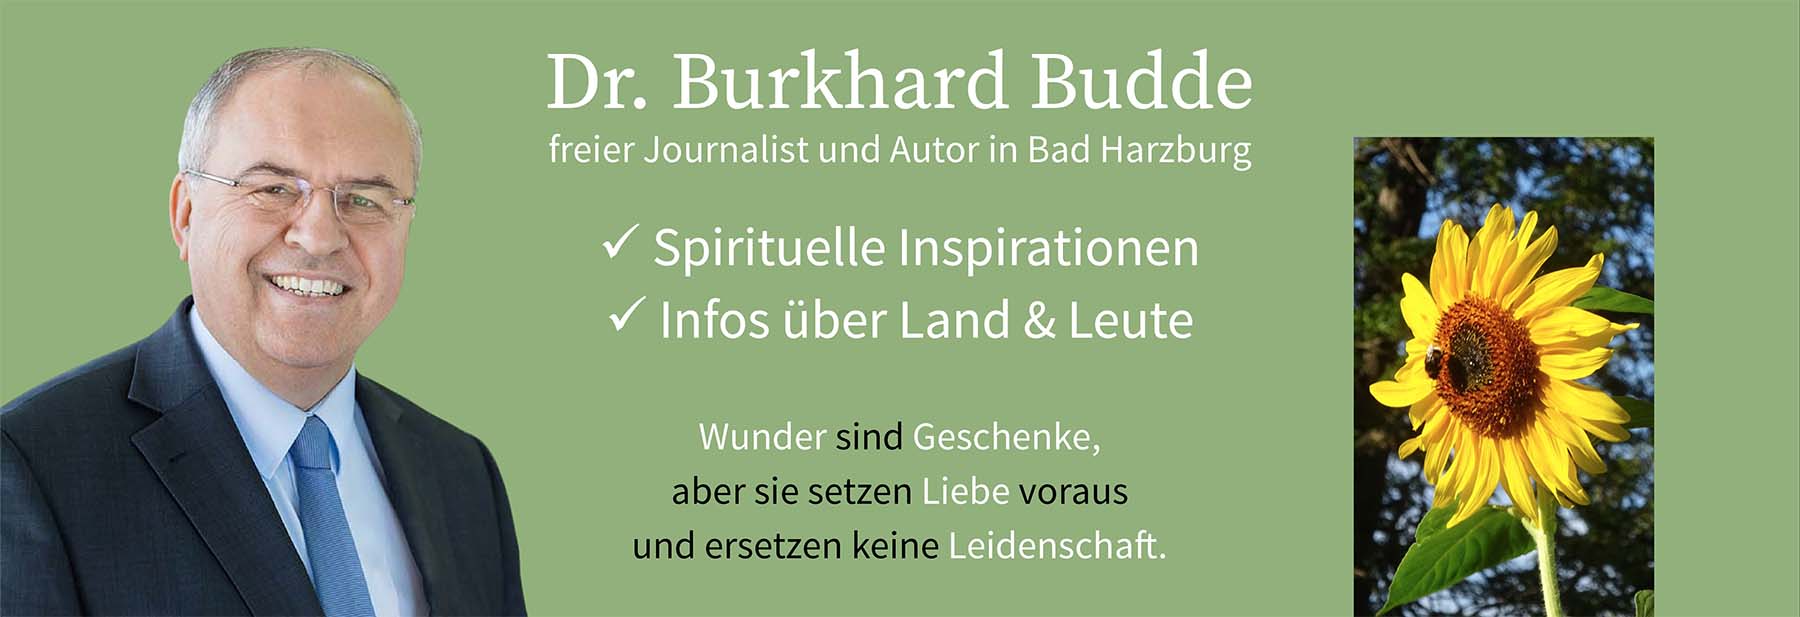 Dr. Burkhard Budde